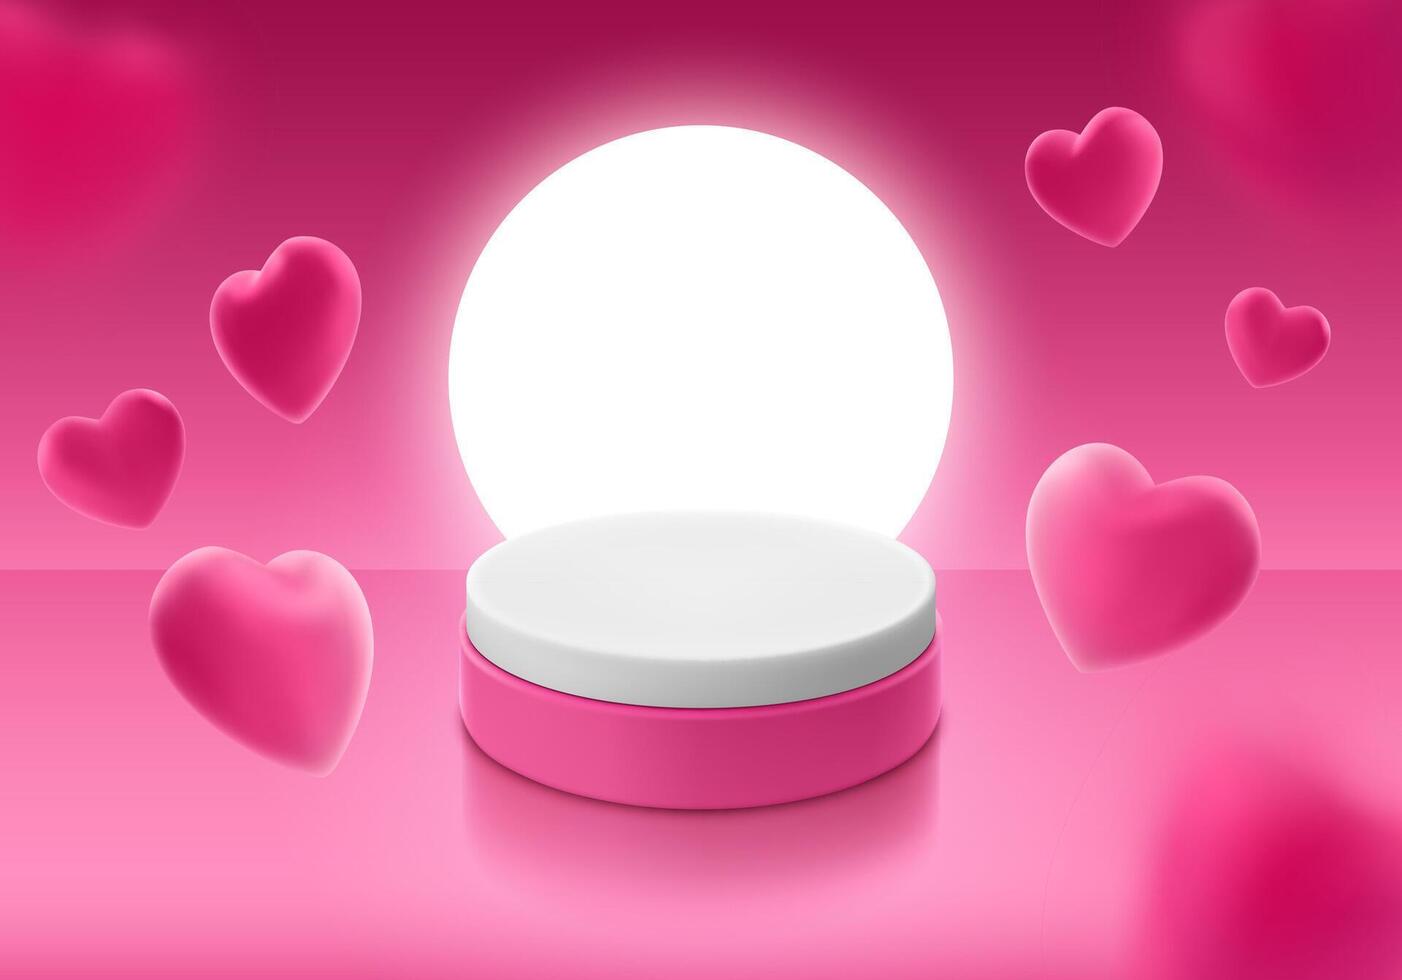 piedistallo cilindrico forma piedistallo per Prodotto Schermo su rosa sfondo con volante 3d cuore sagomato palloncini. vettore realistico illustrazione per pubblicità striscione, invito, cartolina.